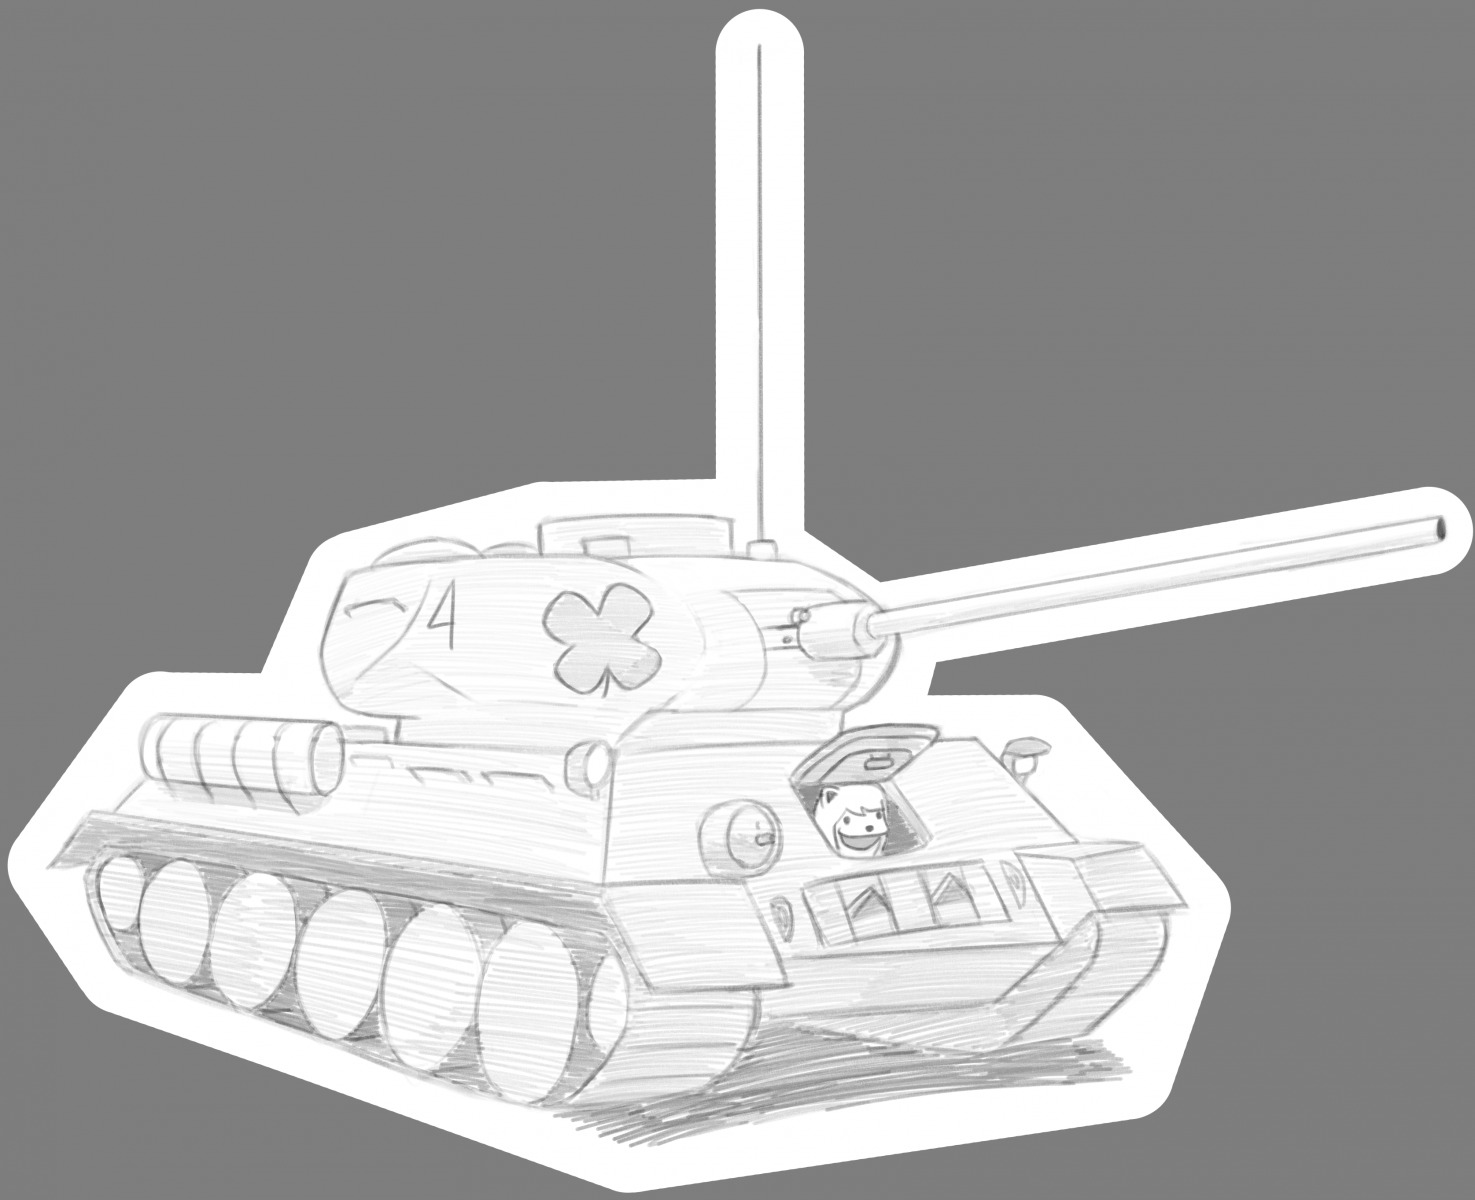 spurdo stuffedidiot t-34/85 tank